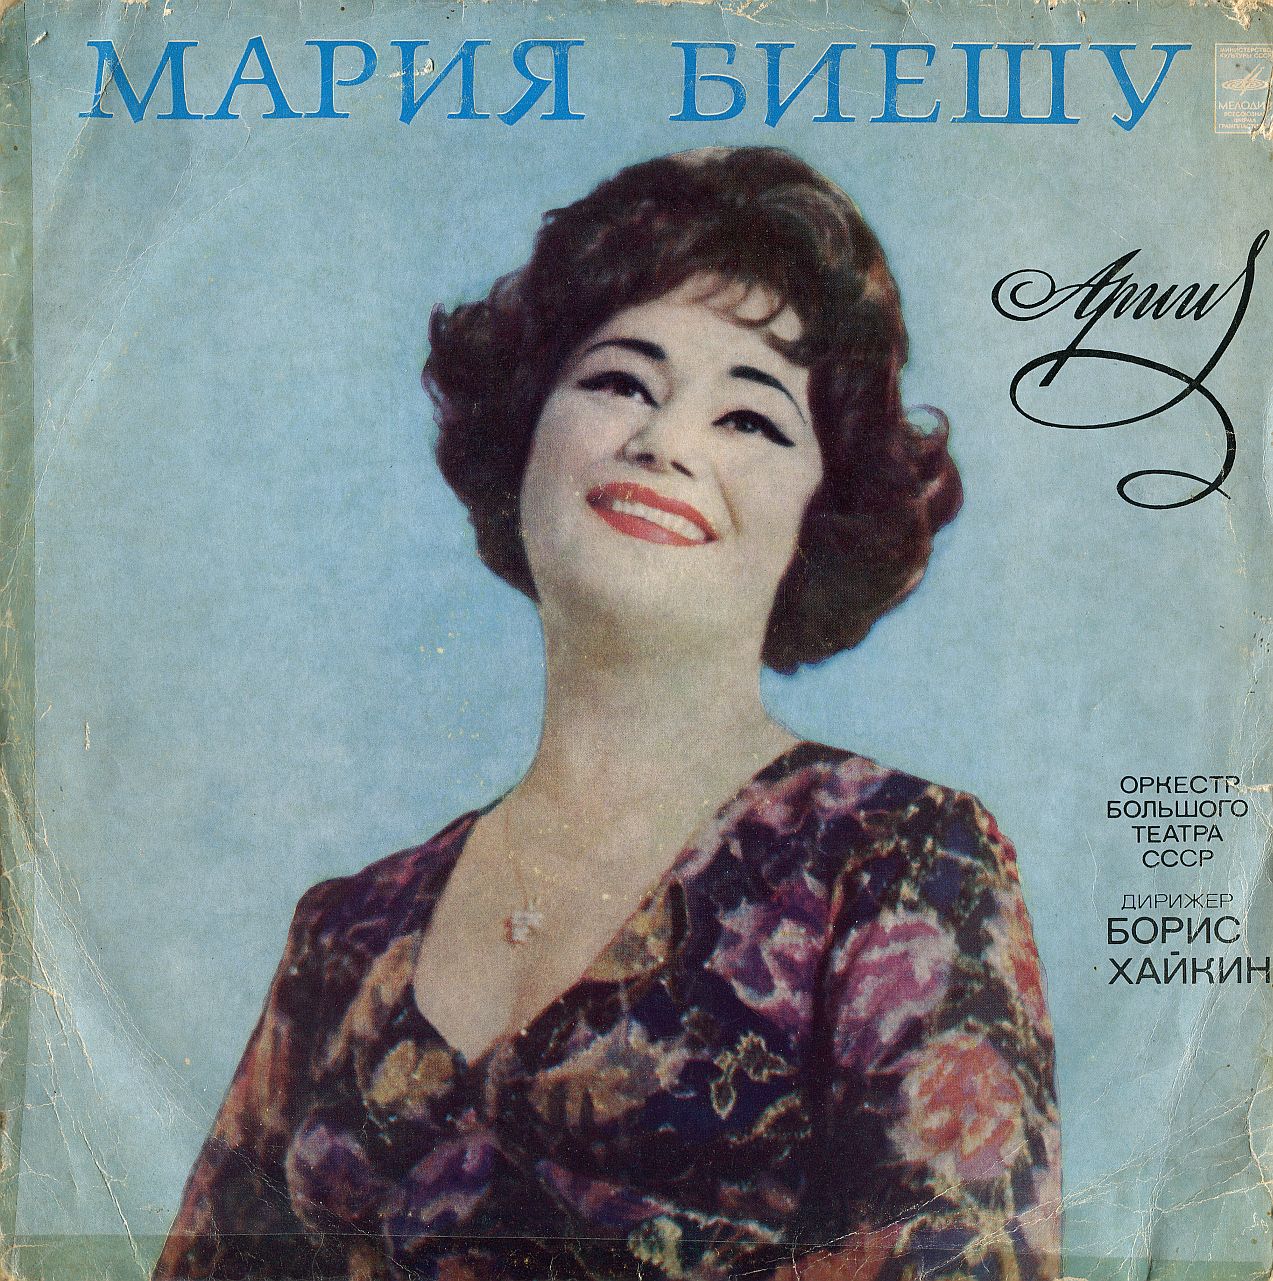 Мария БИЕШУ, сопрано. Арии из опер